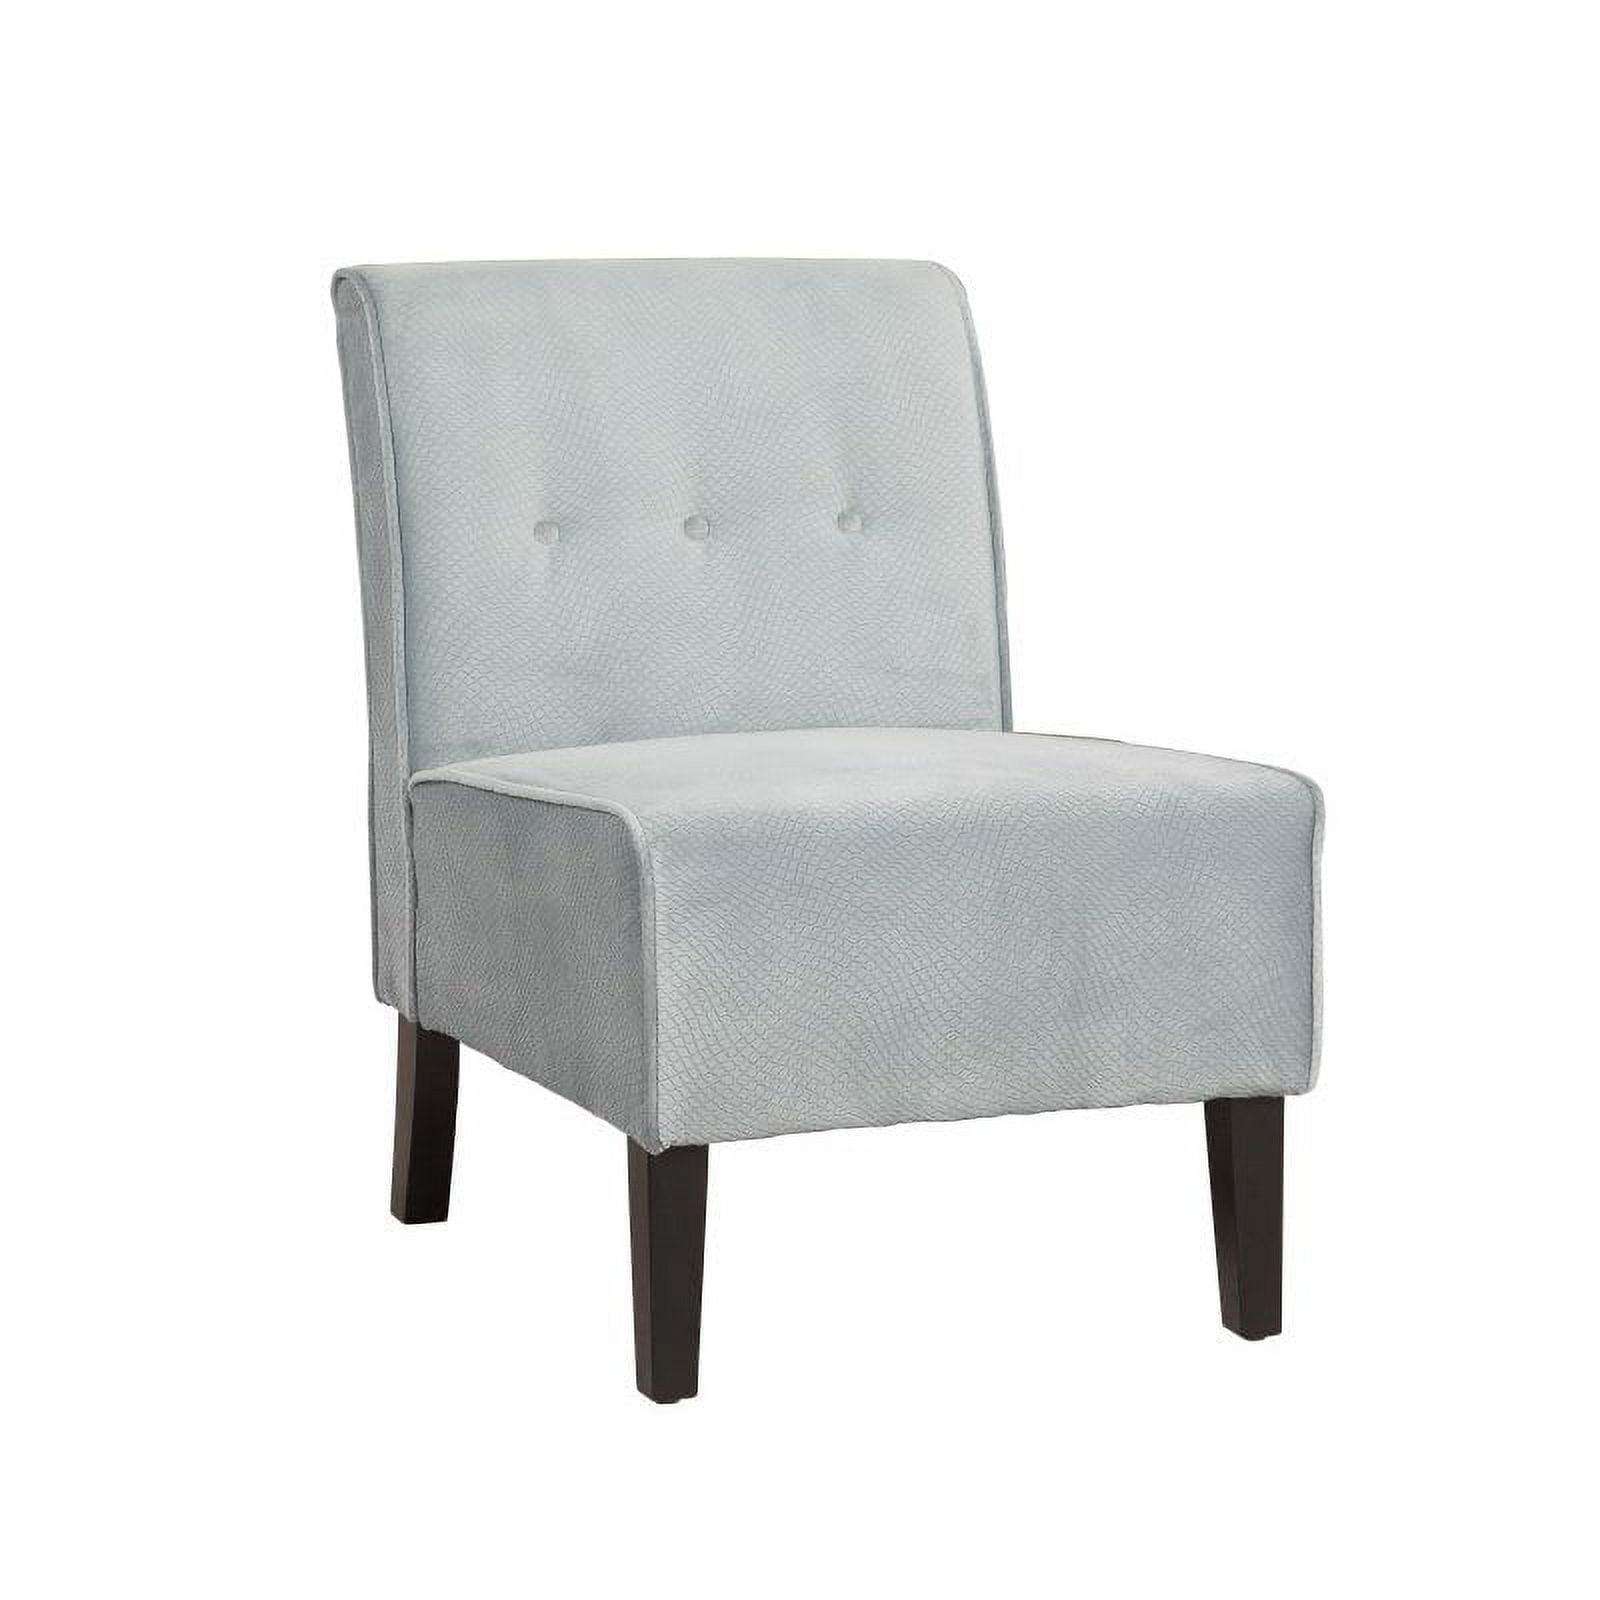 Linon Home Decor Coco Accent Chair, Multiple Colors - Walmart.com